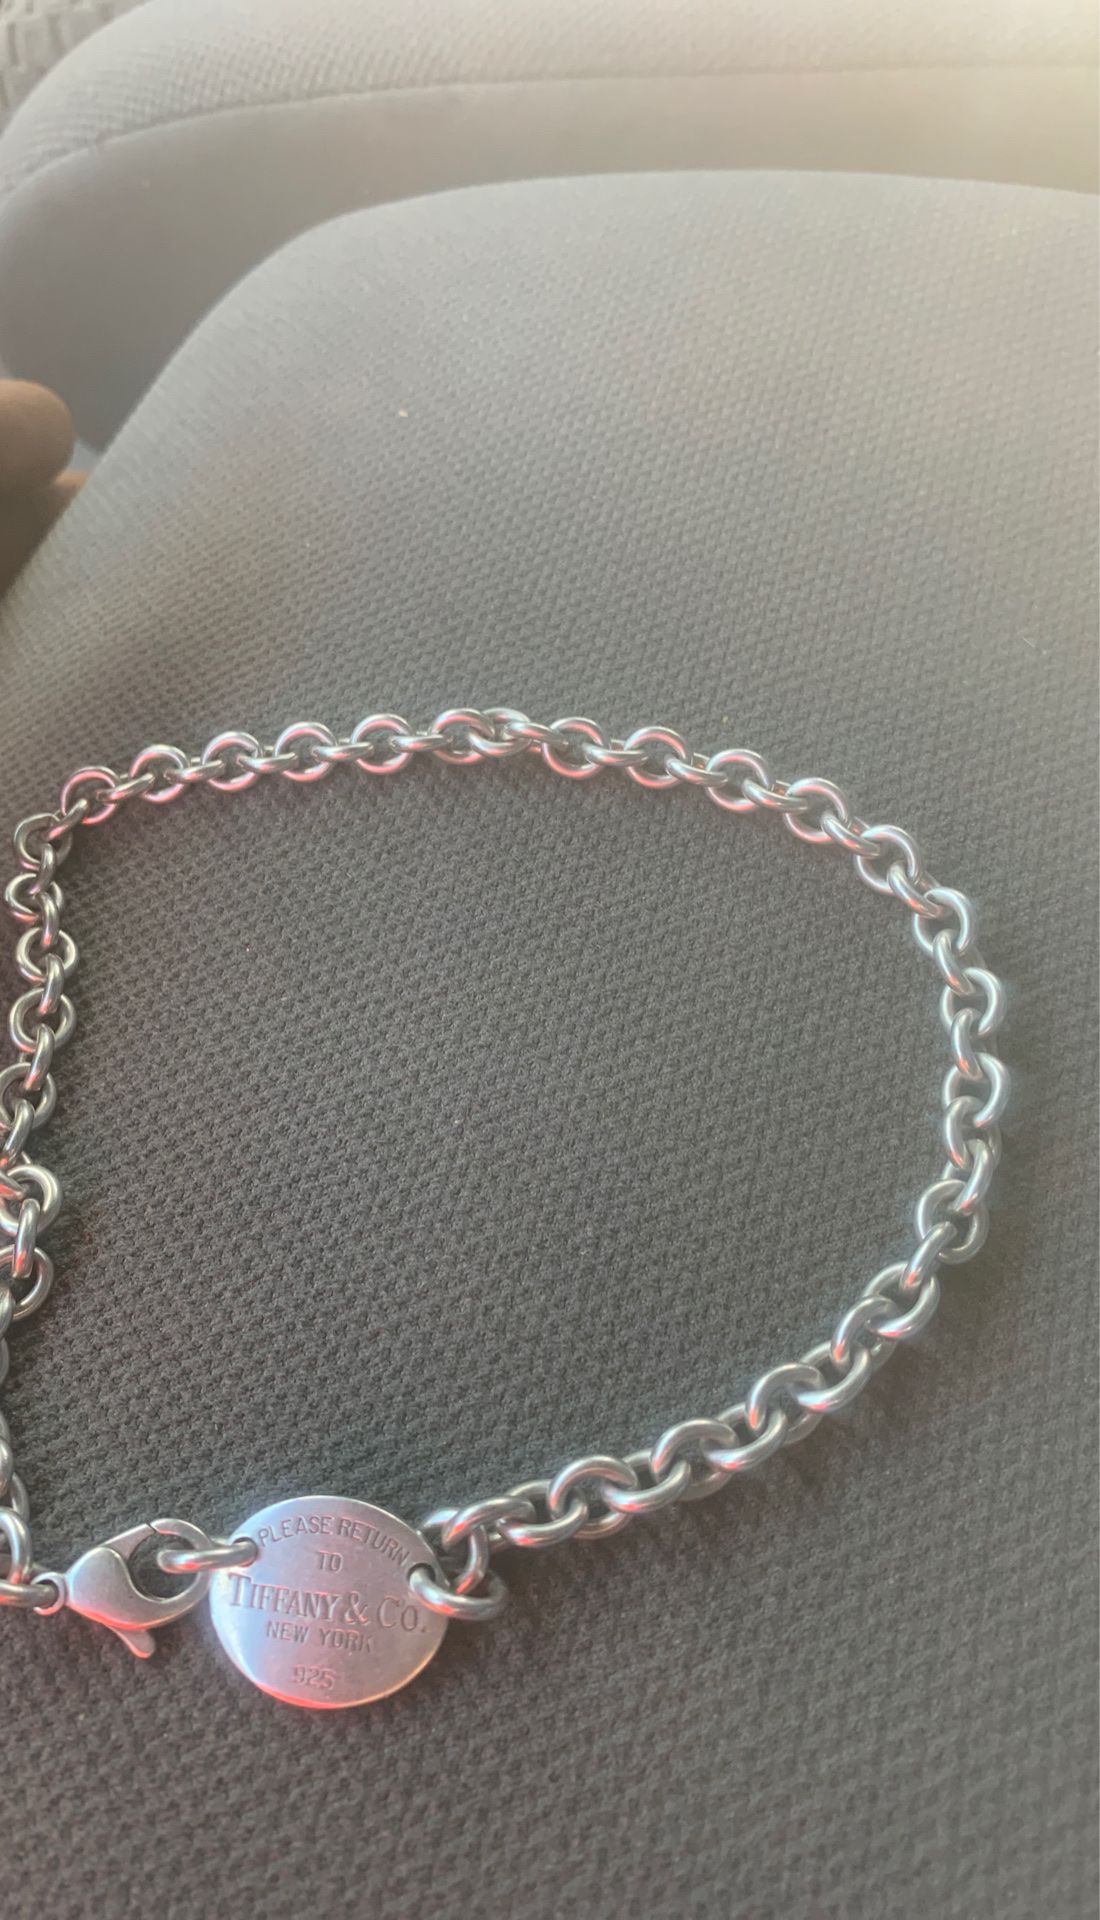 Tiffany&co hearts necklace